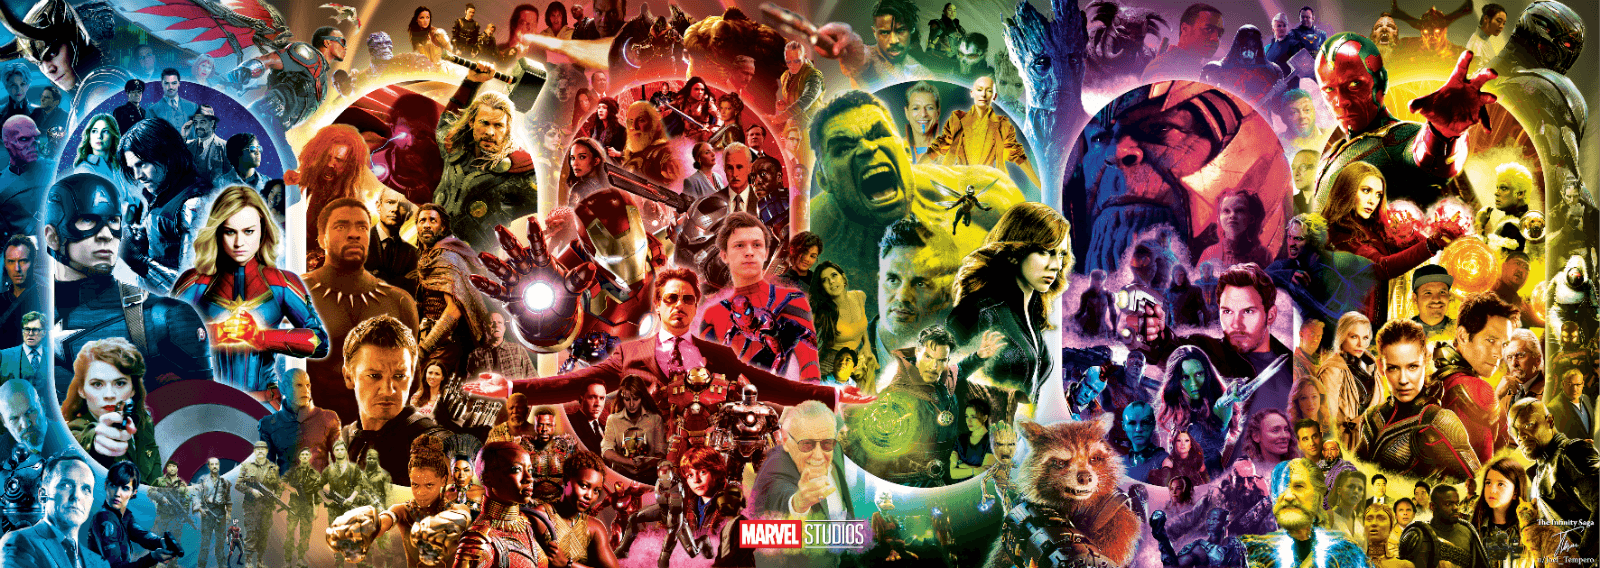 Những hình nền Marvel Universe sẽ giúp bạn chìm đắm vào thế giới siêu anh hùng với những hình ảnh đầy màu sắc và kịch tính. Cùng khám phá những nhân vật yêu thích của bạn như Spiderman, Captain America, Iron Man... qua các hình nền chất lượng cao này. 